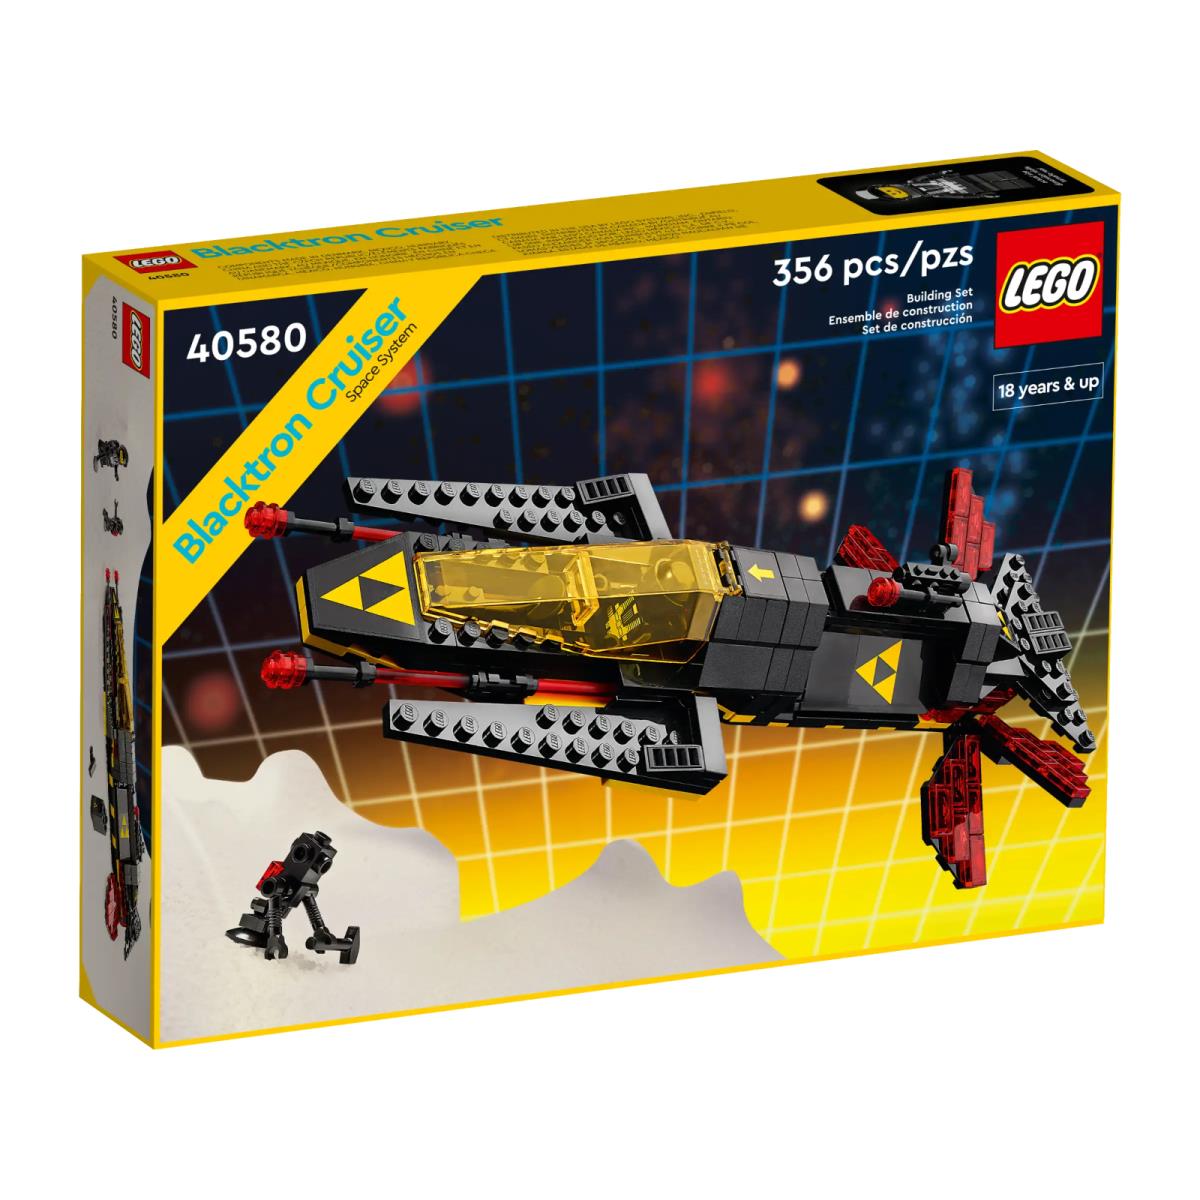 Lego Icons 40580 Blacktron Cruiser